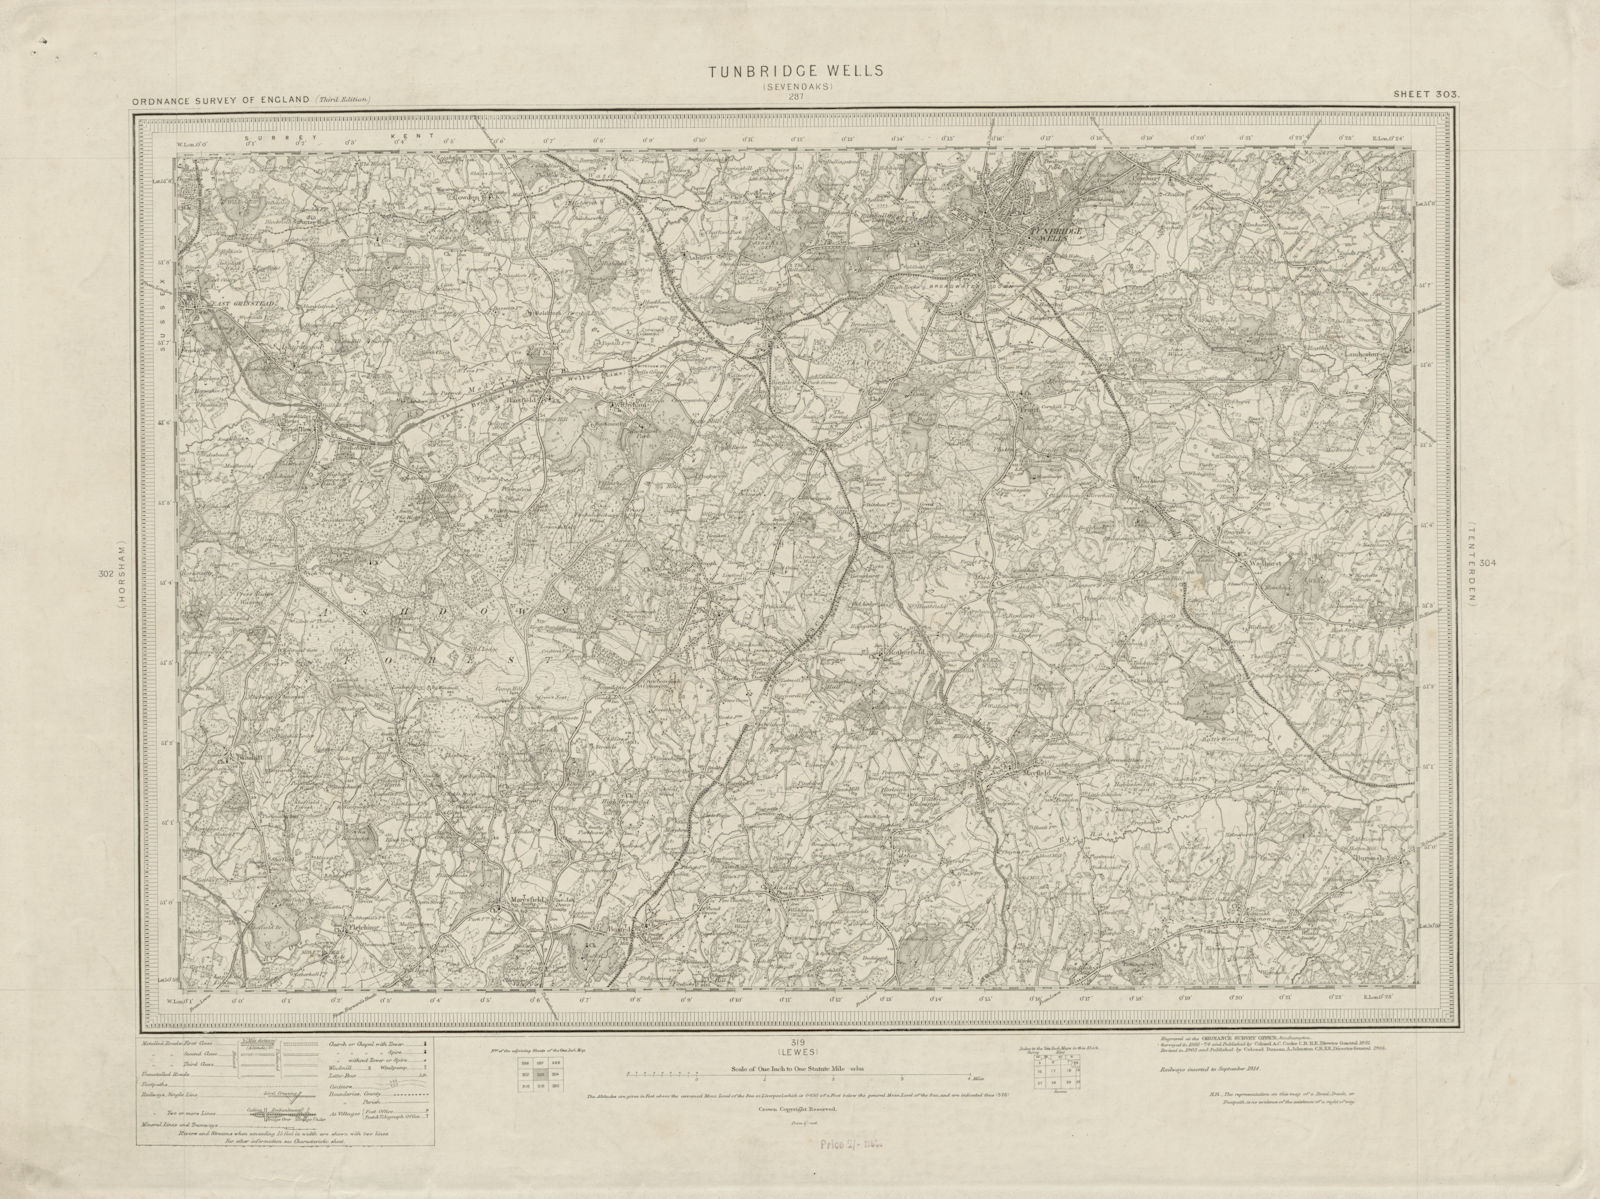 Tunbridge Wells sheet 303. High Weald Ashdown Forest. ORDNANCE SURVEY 1914 map